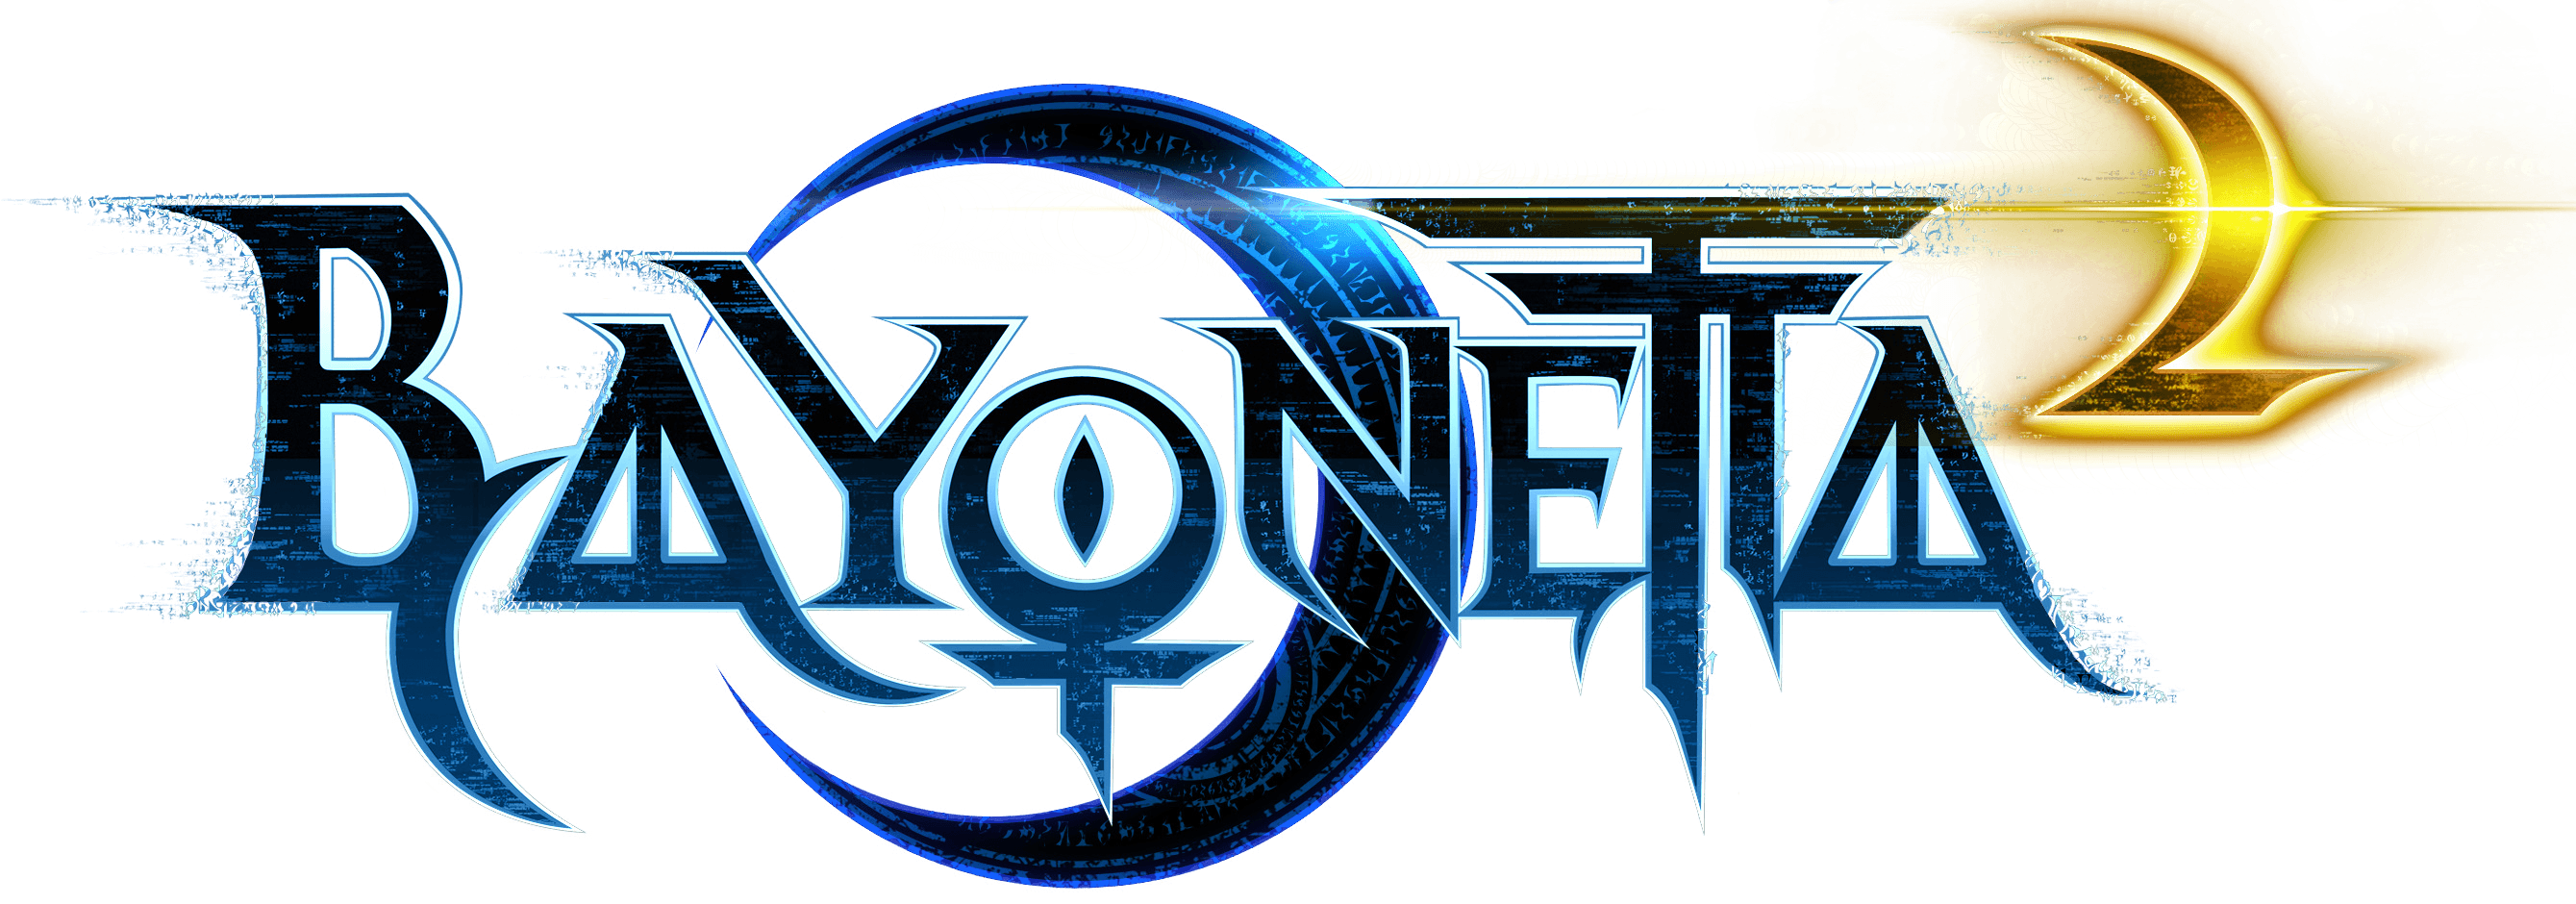 Bayonetta 2 Logo